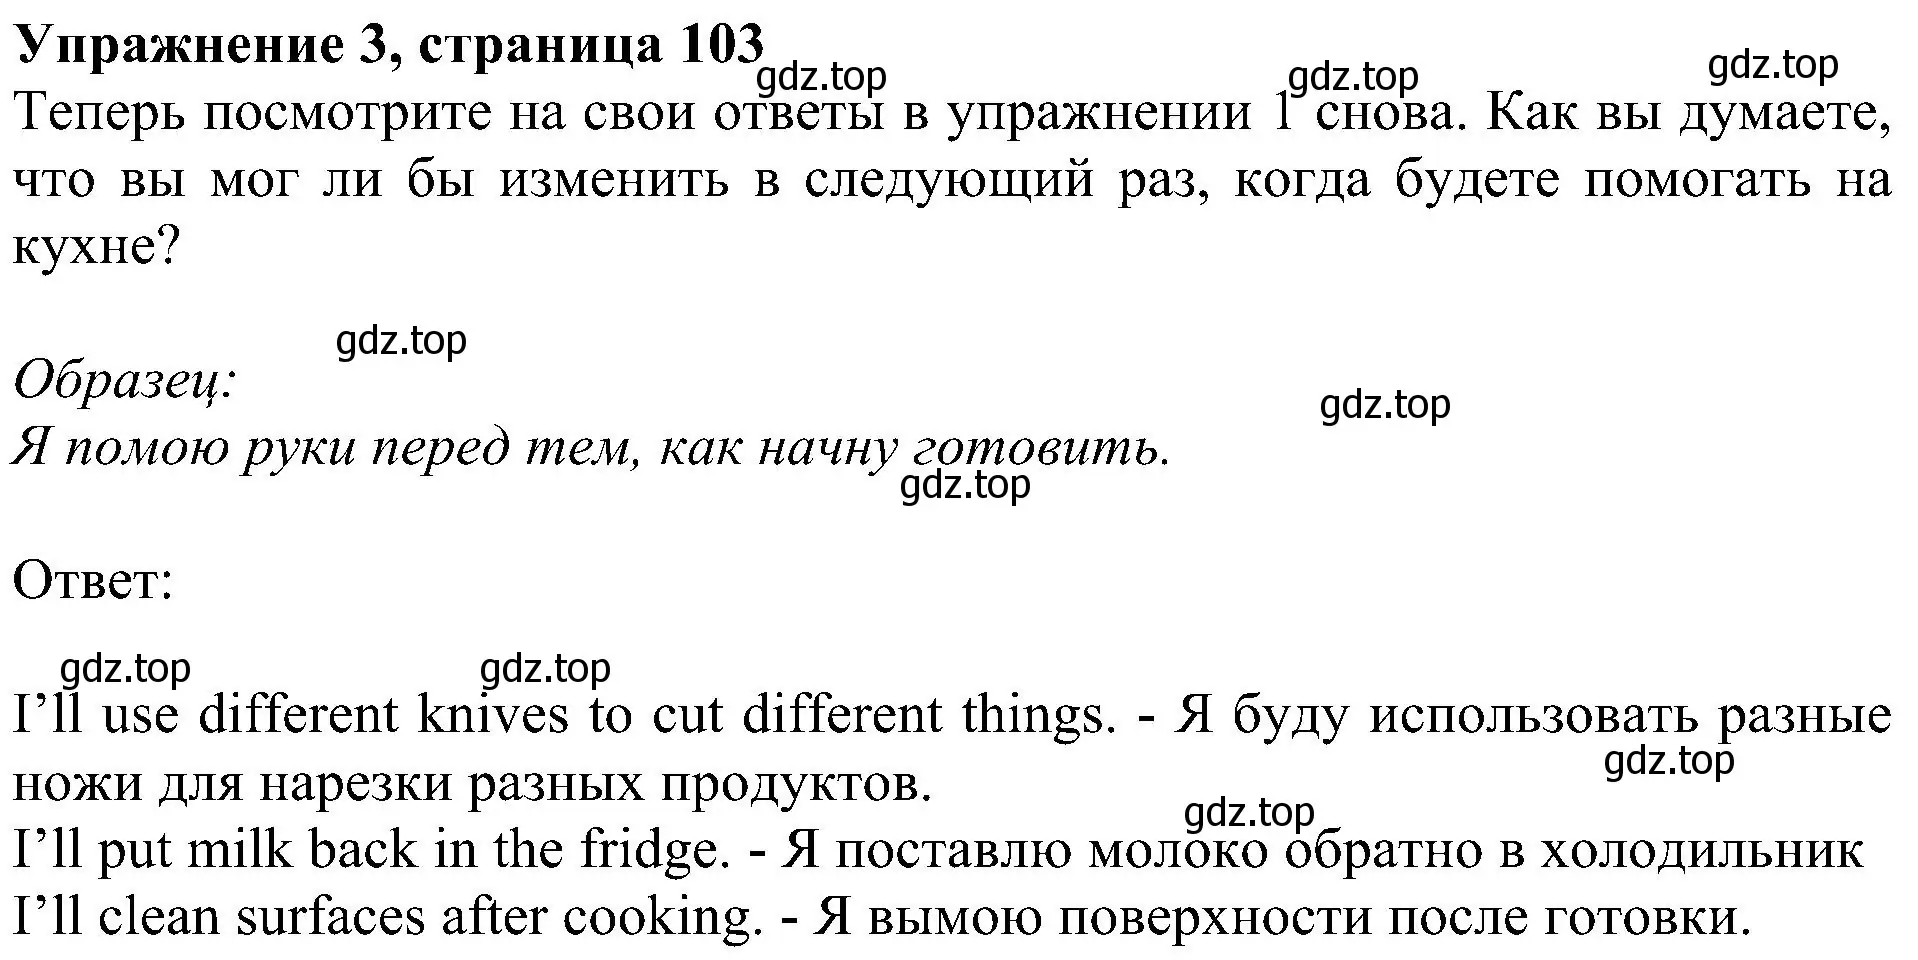 Решение номер 3 (страница 103) гдз по английскому языку 5 класс Ваулина, Дули, учебник